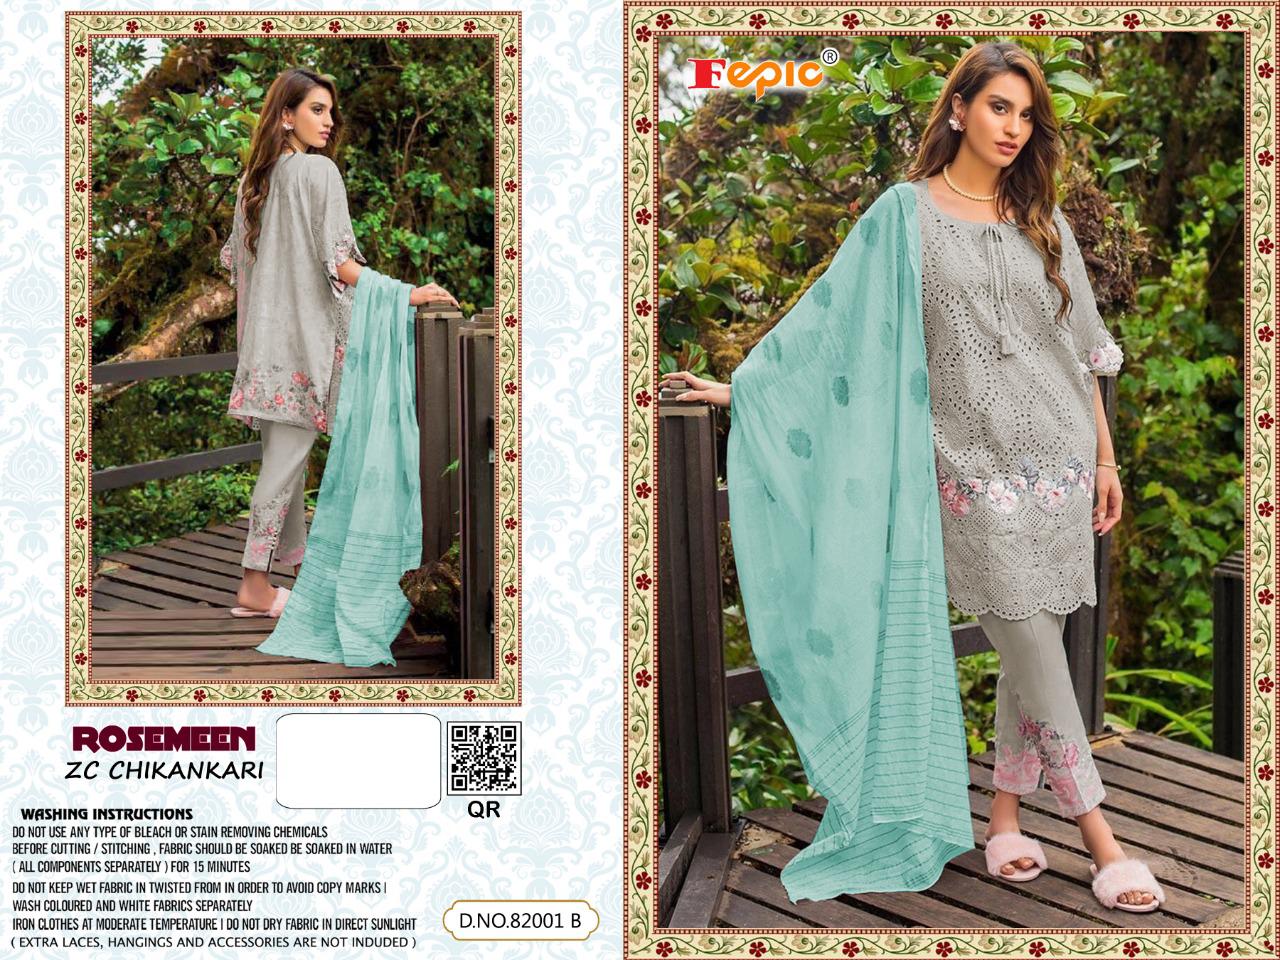 Fepic Rosemeen Zc Chikankaari Designer Cotton Chikankaari Pakistani Pettern Suits Wholesale